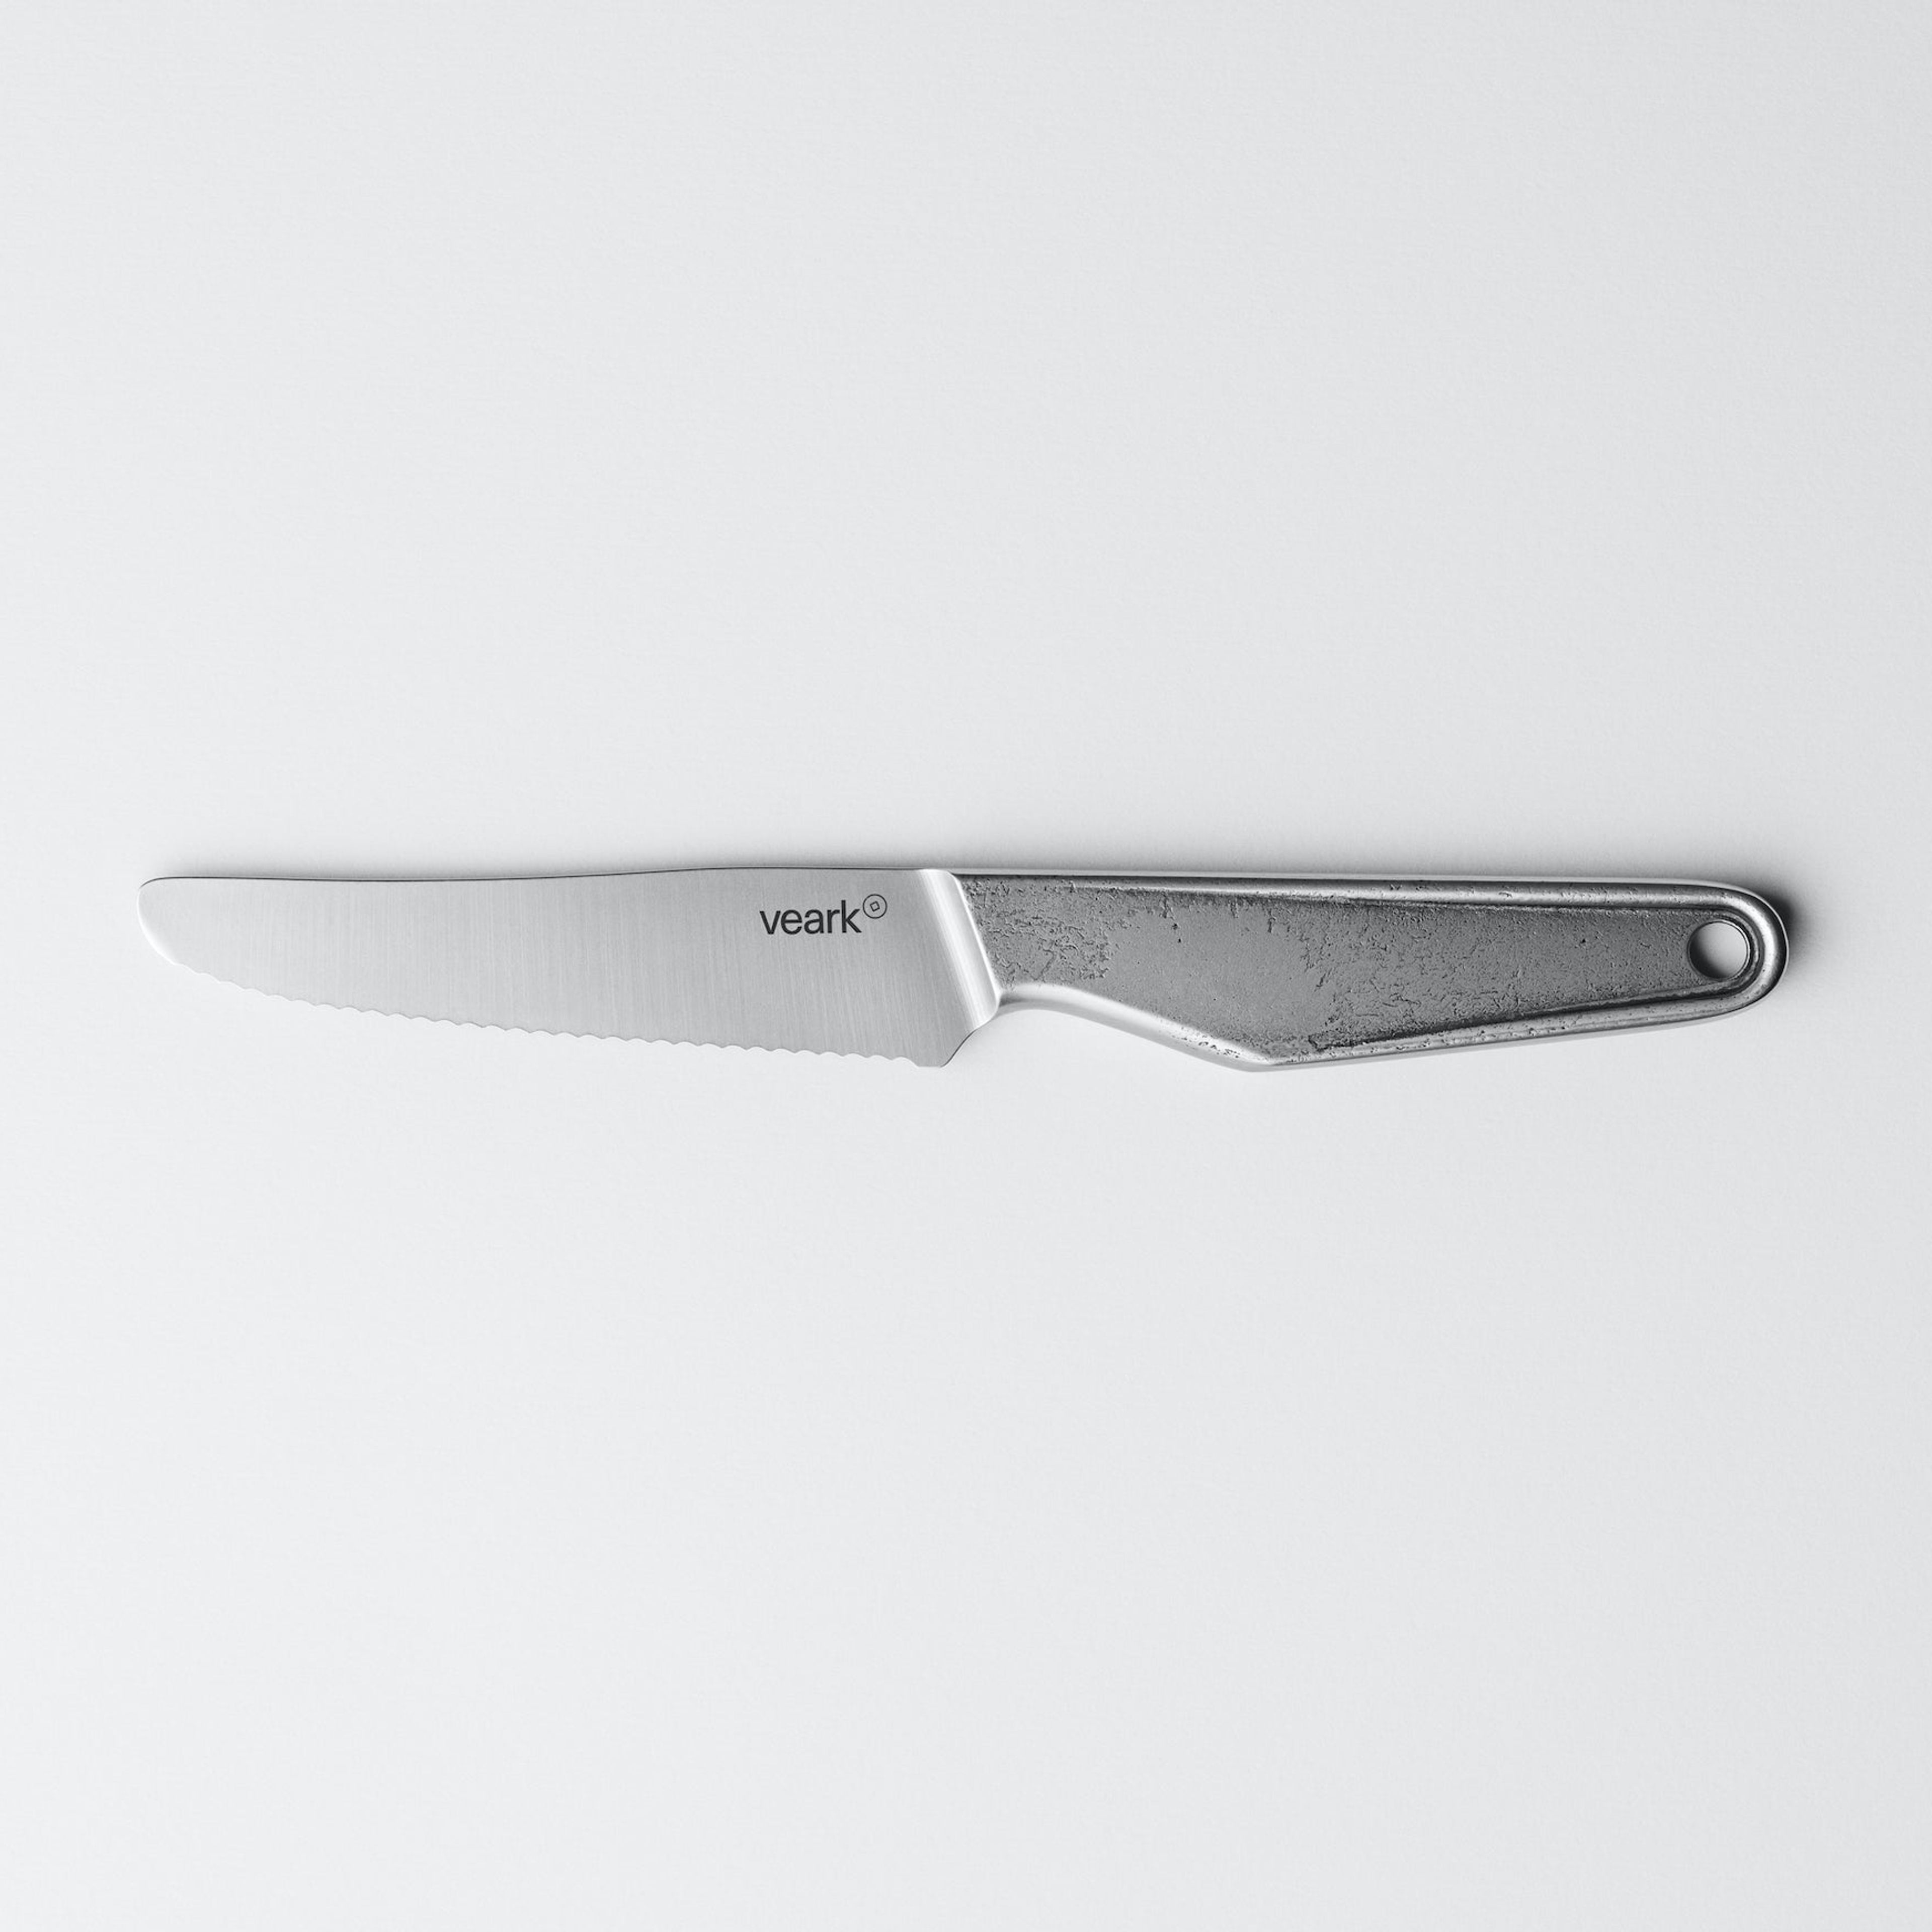 Veark SRK10 Forged Serrated knife